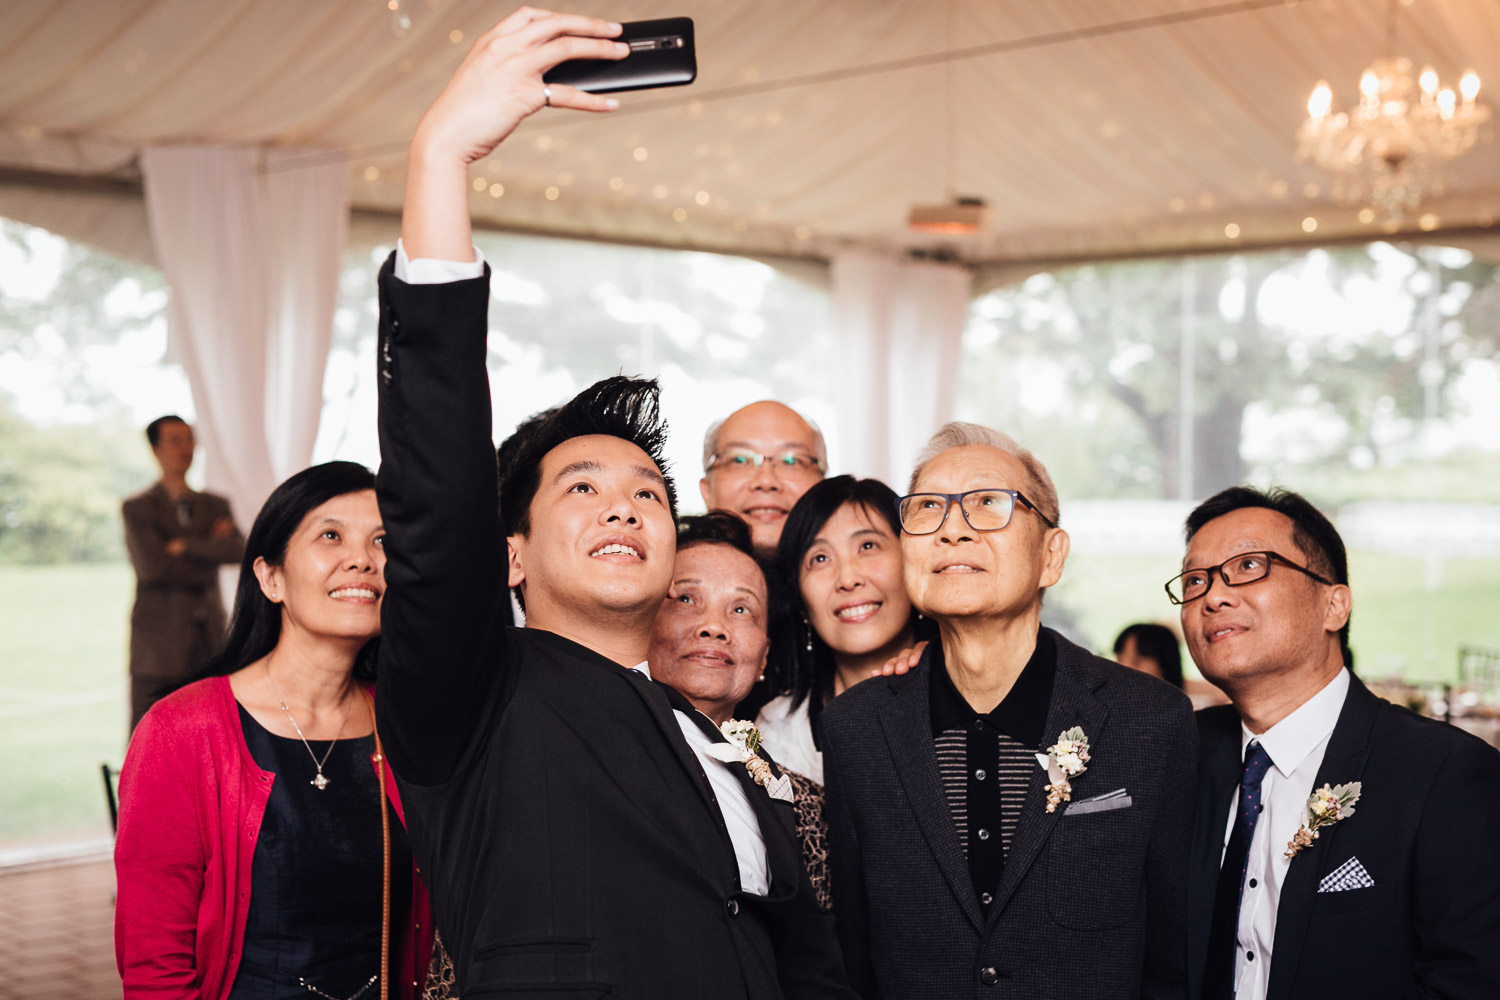 selfie group shot at brockhouse restaurant wedding reception